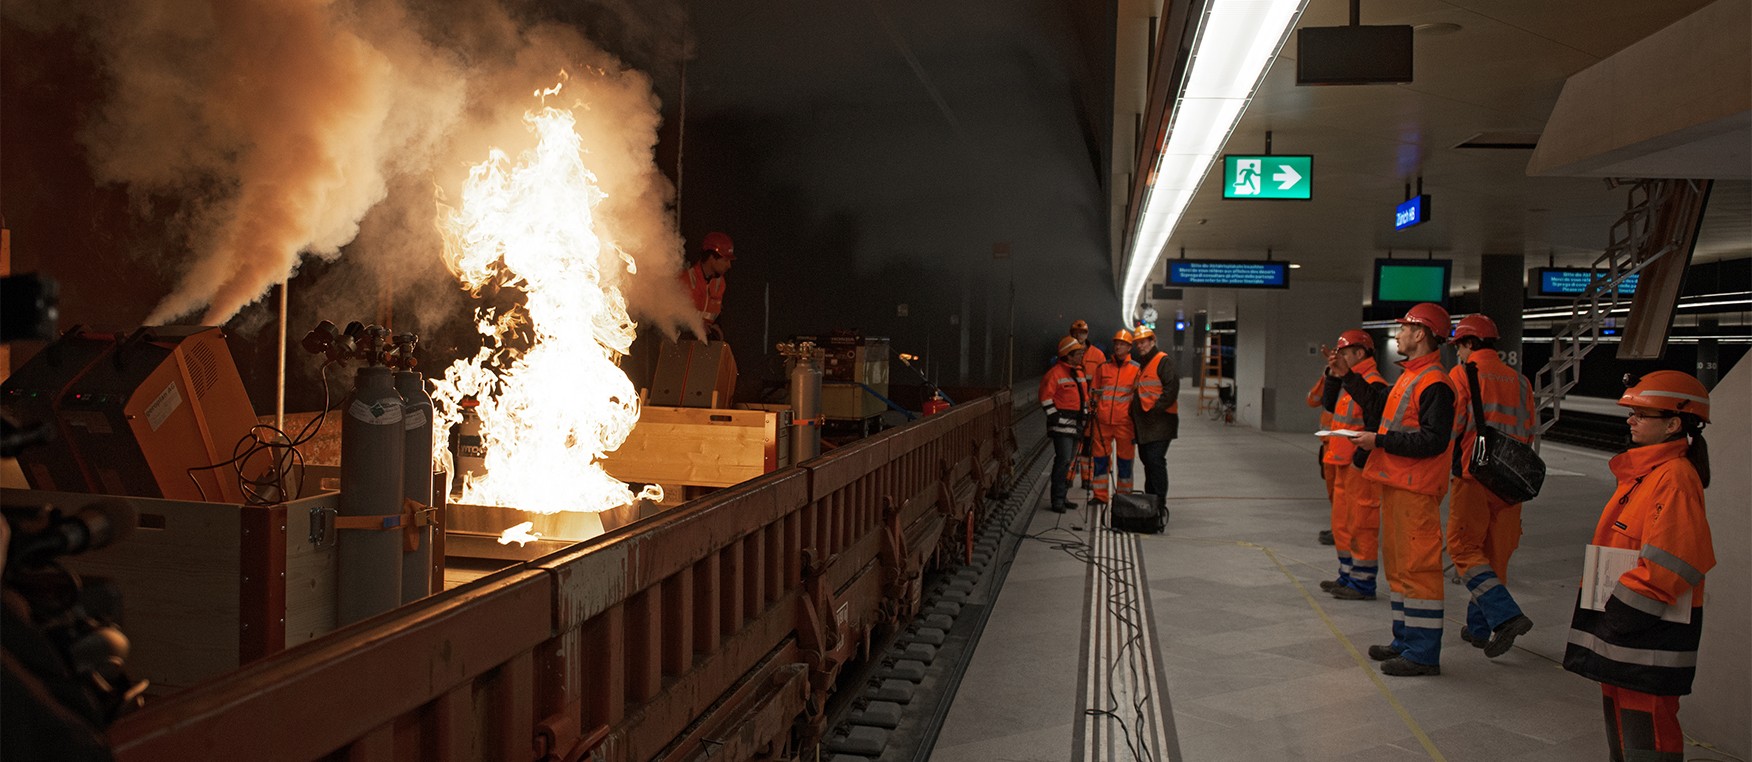 Rauchgastest im neuen Tiefbahnhof Löwenstrasse vor der Inbetriebnahme